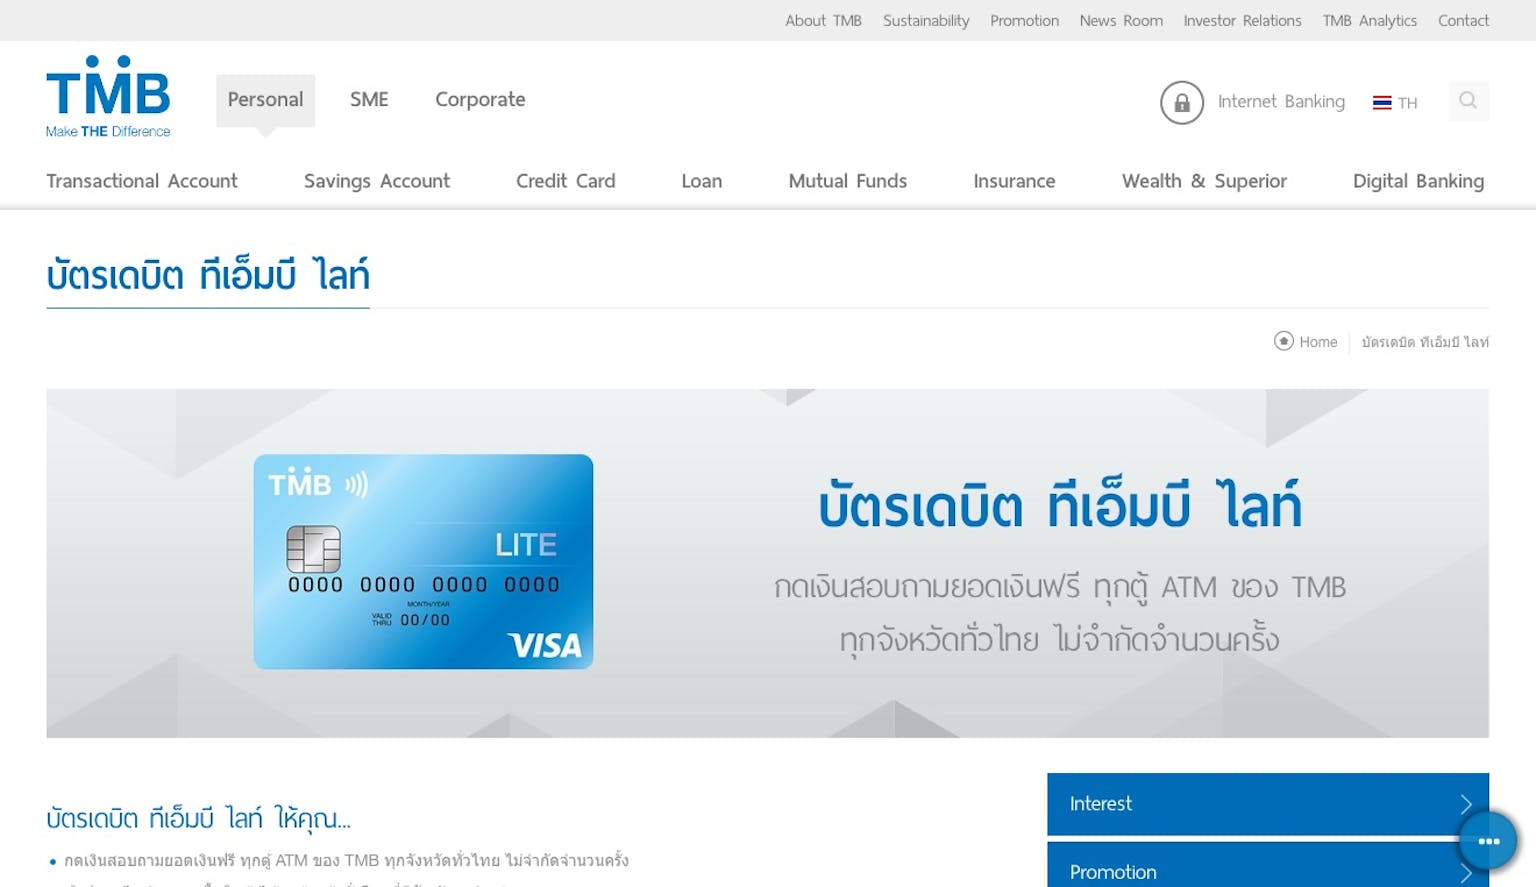 บัตรเดบิต ทีเอ็มบี ไลท์ | ธนาคารทหารไทย (การควบรวมของ Ttb) | Moneyduck  Thailand